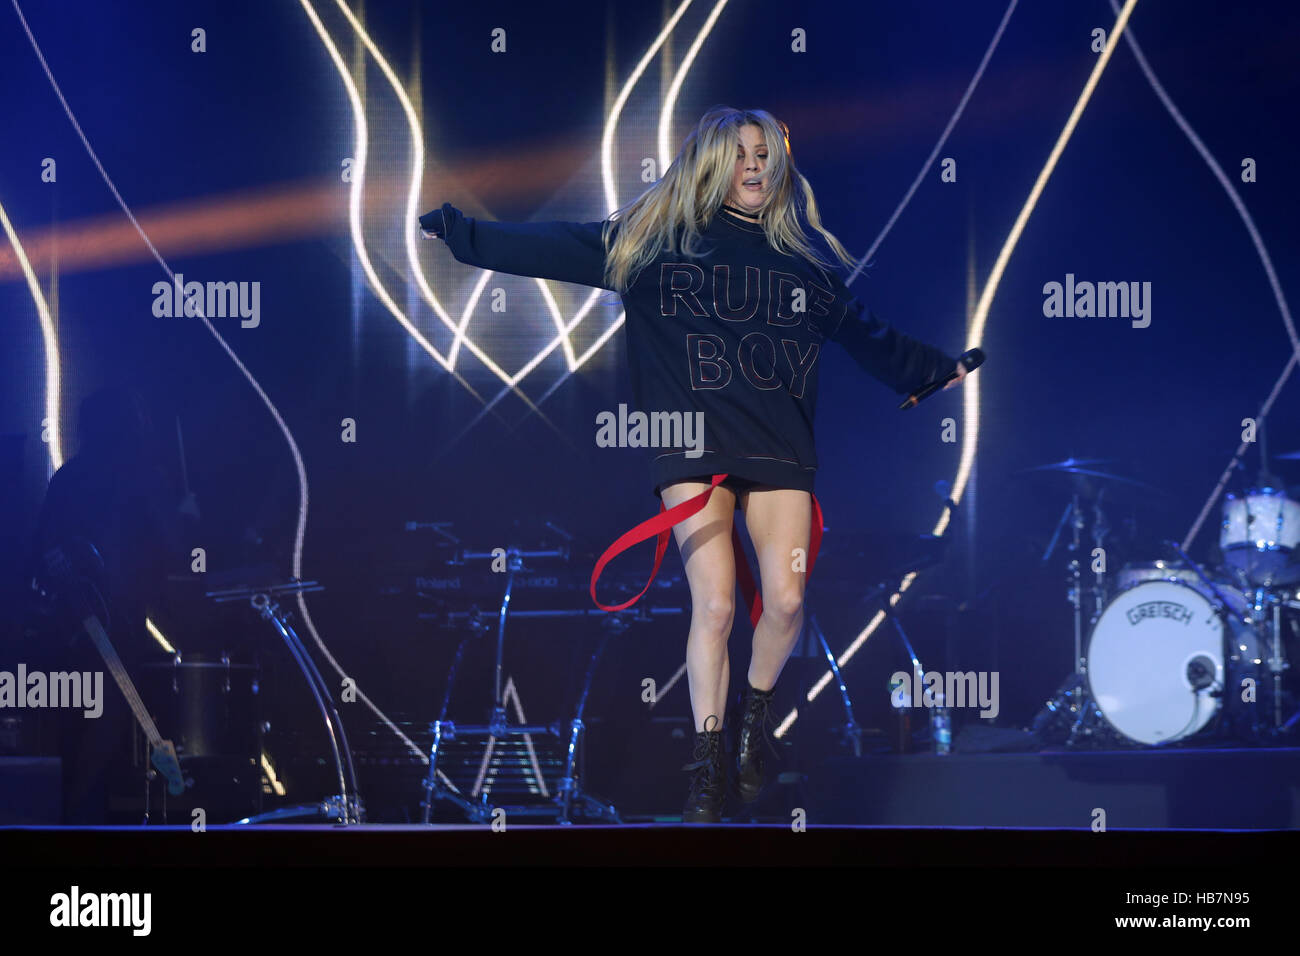 Ellie Goulding auf der Bühne in der Hauptstadt Jingle Bell Ball mit Coca-Cola in der Londoner O2 Arena. PRESSEVERBAND Foto. Bild Datum: Sonntag, 4. Dezember 2016. Bildnachweis sollte lauten: Yui Mok/PA Wire Stockfoto